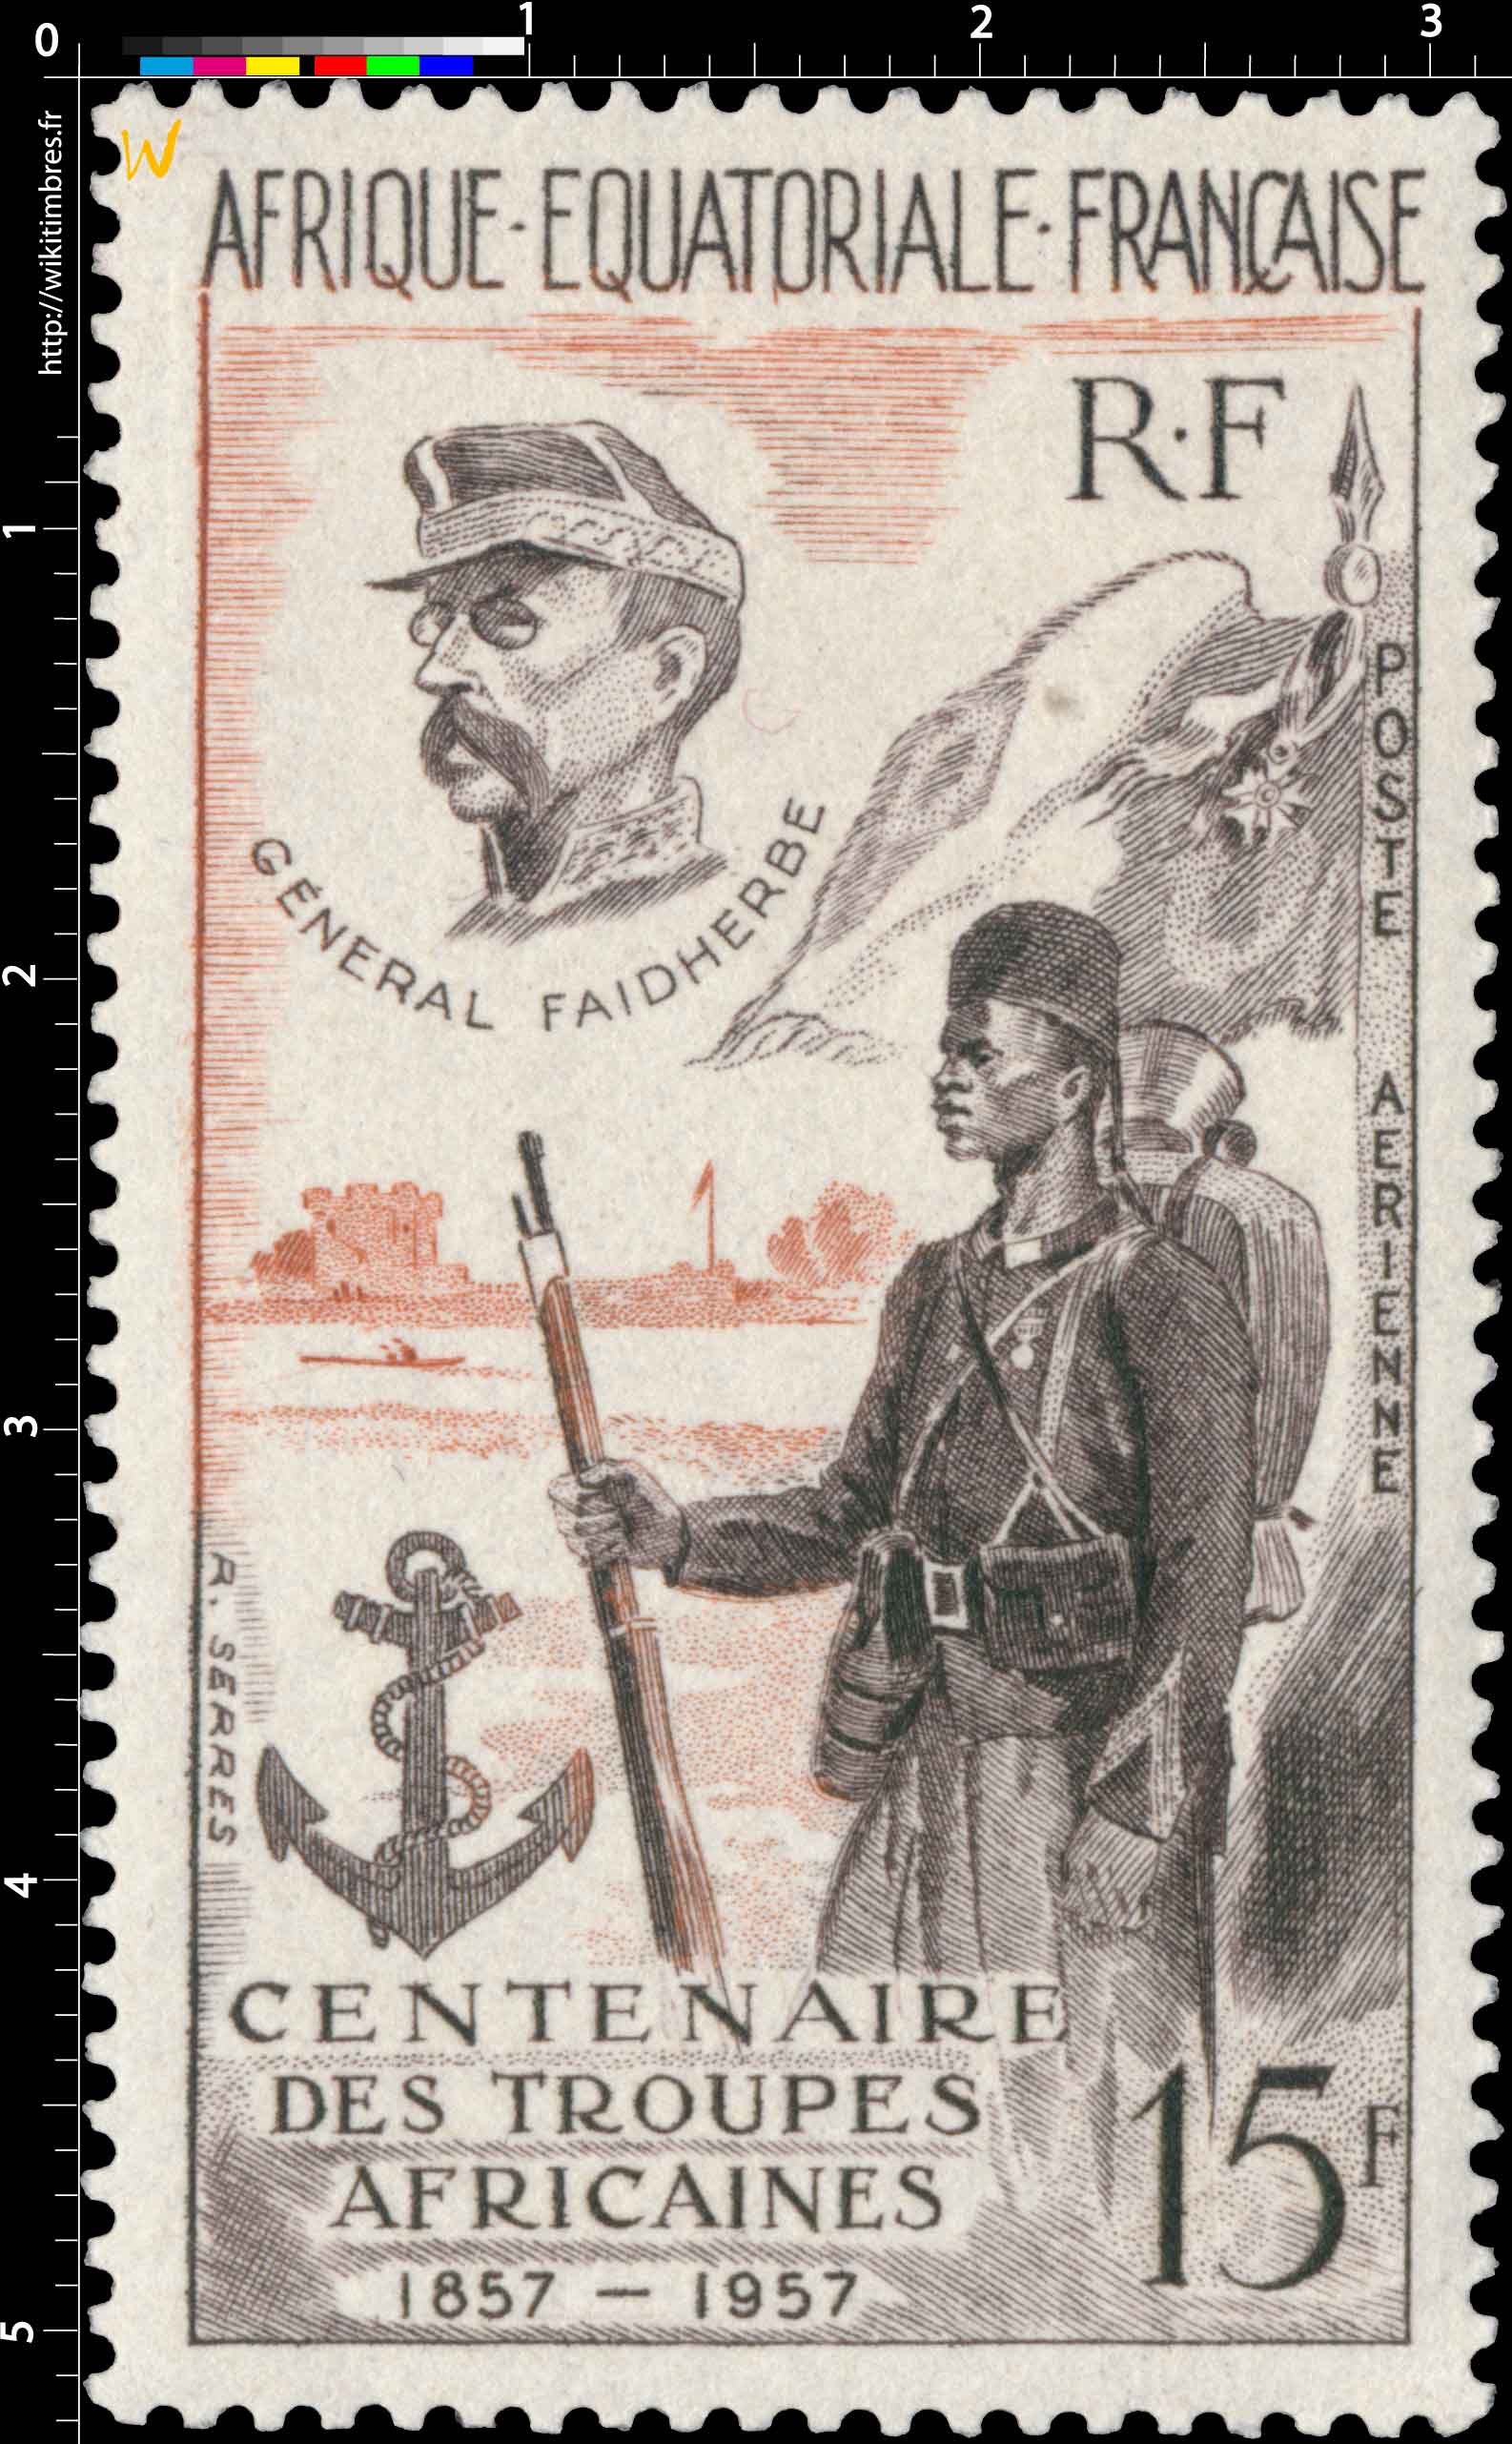 Centenaire des troupes africaines 1857 1957 Général Faidherbe